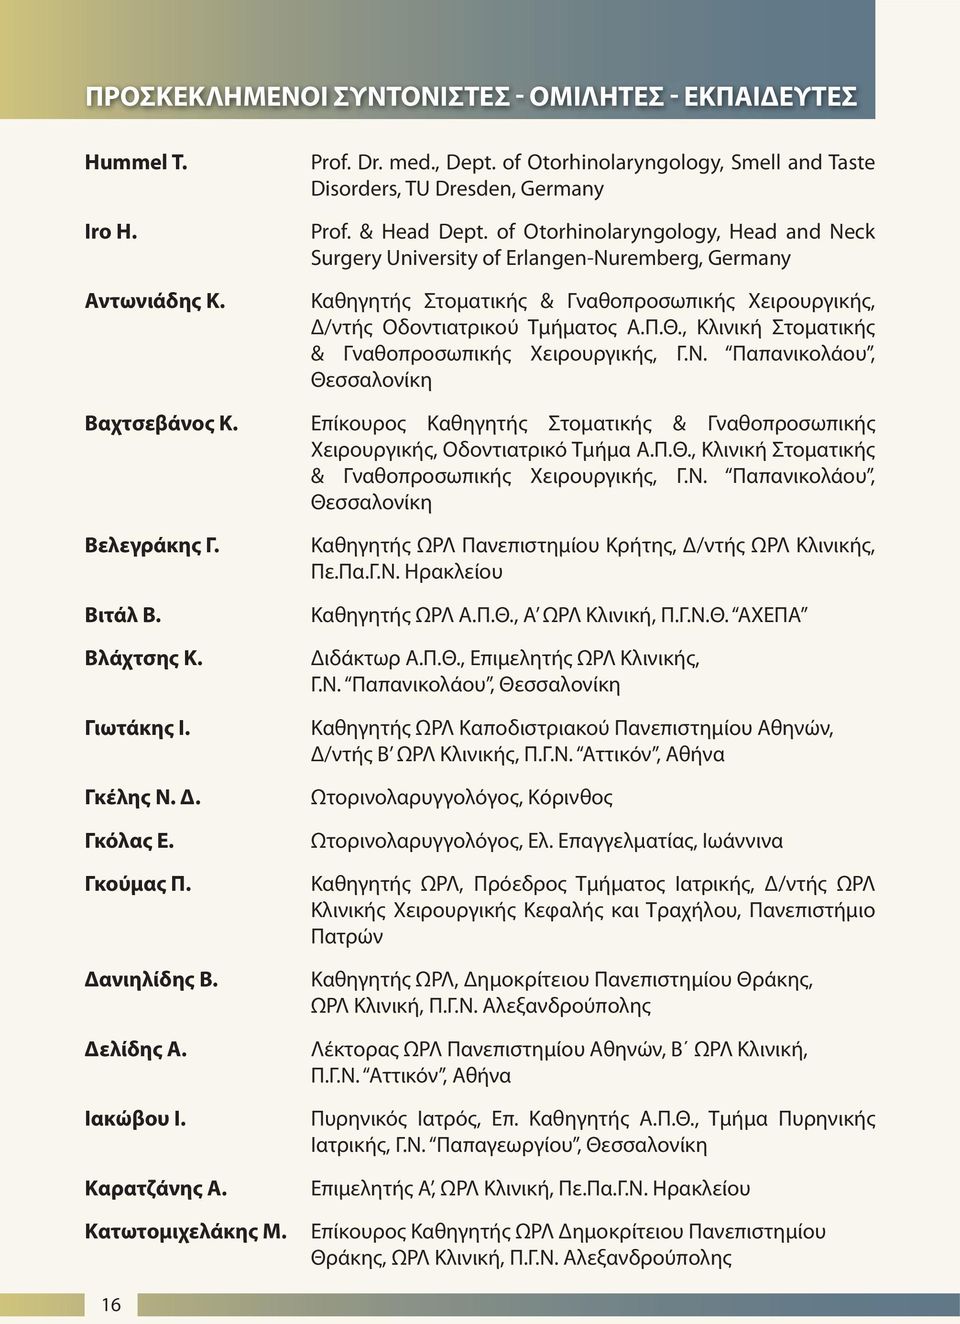 , Κλινική Στοματικής & Γναθοπροσωπικής Χειρουργικής, Γ.Ν. Παπανικολάου, Θεσσαλονίκη Βαχτσεβάνος Κ. Επίκουρος Καθηγητής Στοματικής & Γναθοπροσωπικής Χειρουργικής, Οδοντιατρικό Τμήμα Α.Π.Θ., Κλινική Στοματικής & Γναθοπροσωπικής Χειρουργικής, Γ.Ν. Παπανικολάου, Θεσσαλονίκη Βελεγράκης Γ.